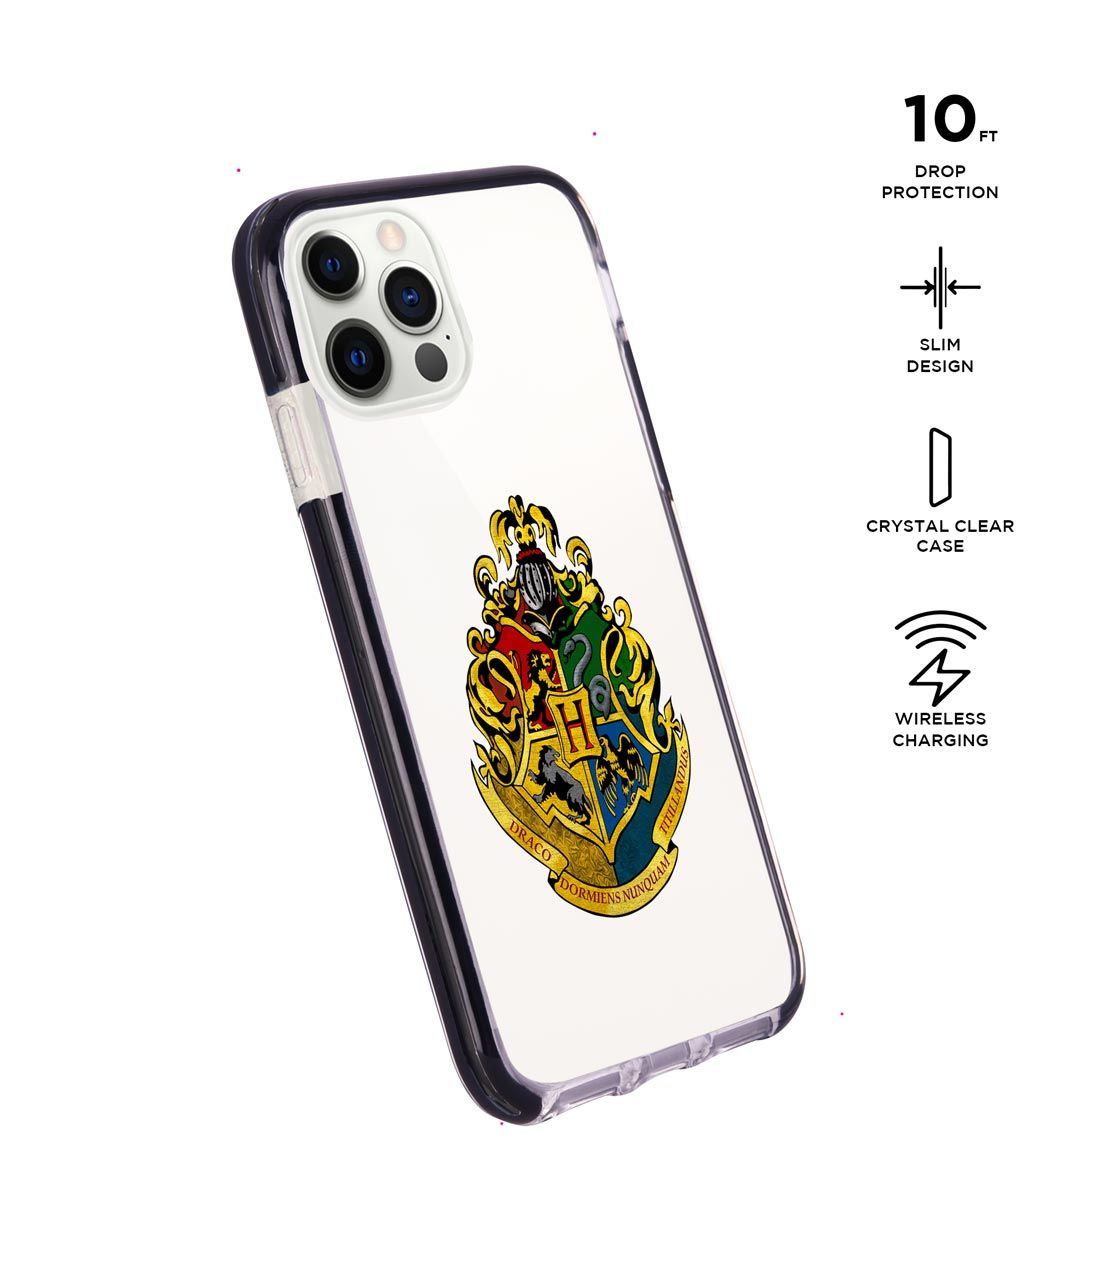 Hogwarts Sigil - Extreme Case for iPhone 12 Pro Max